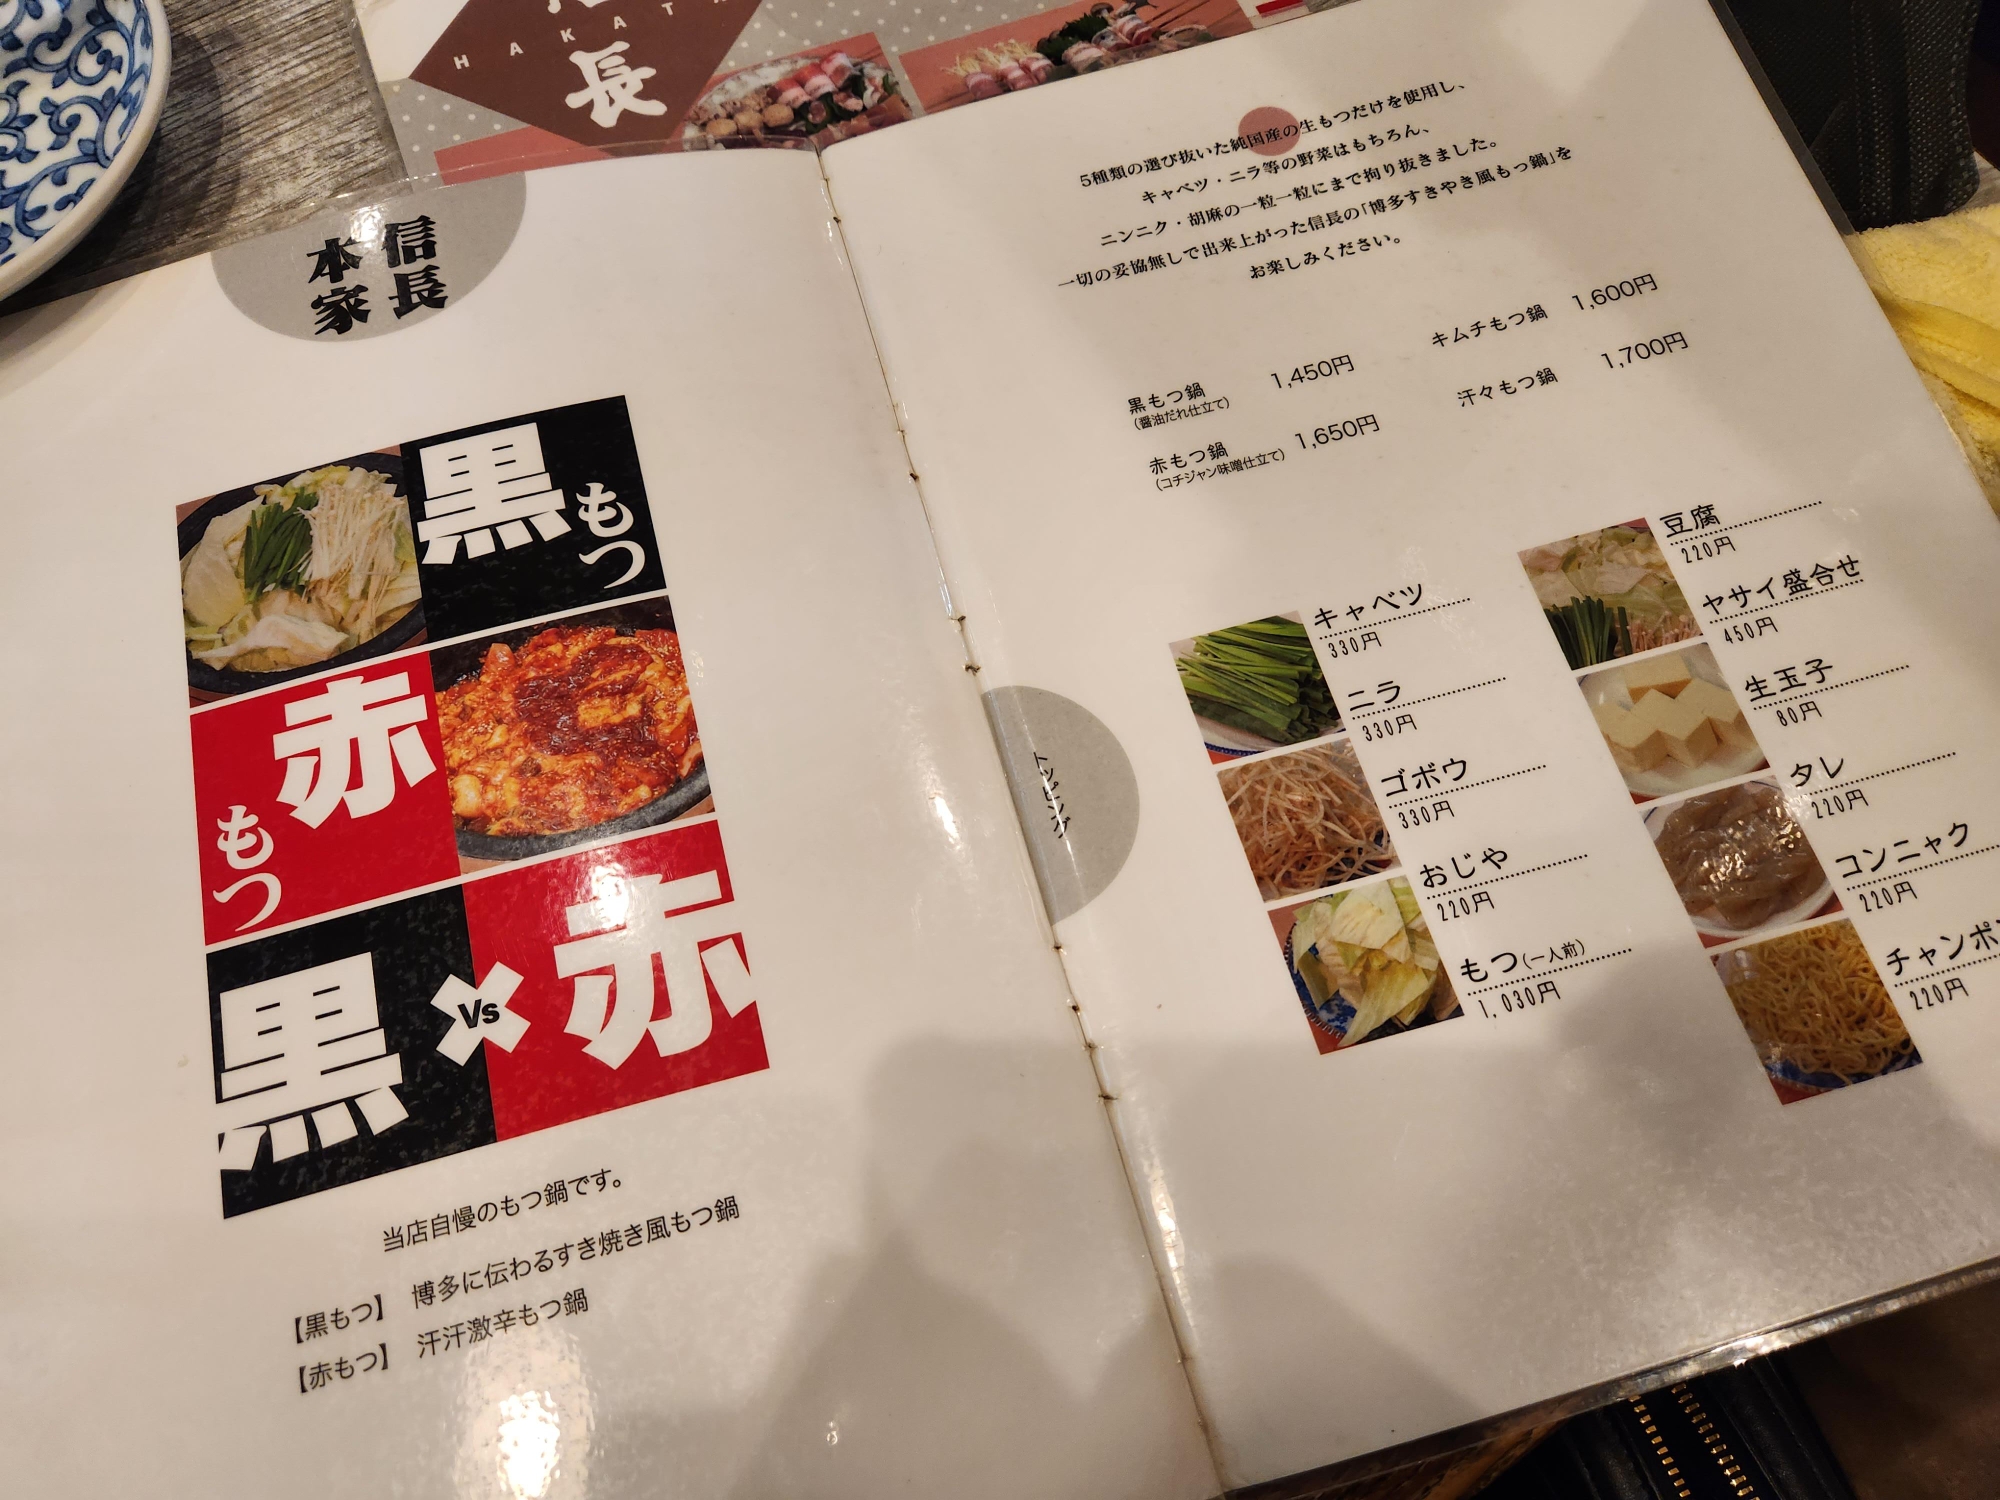 후쿠오카 노부나가혼케 메뉴판